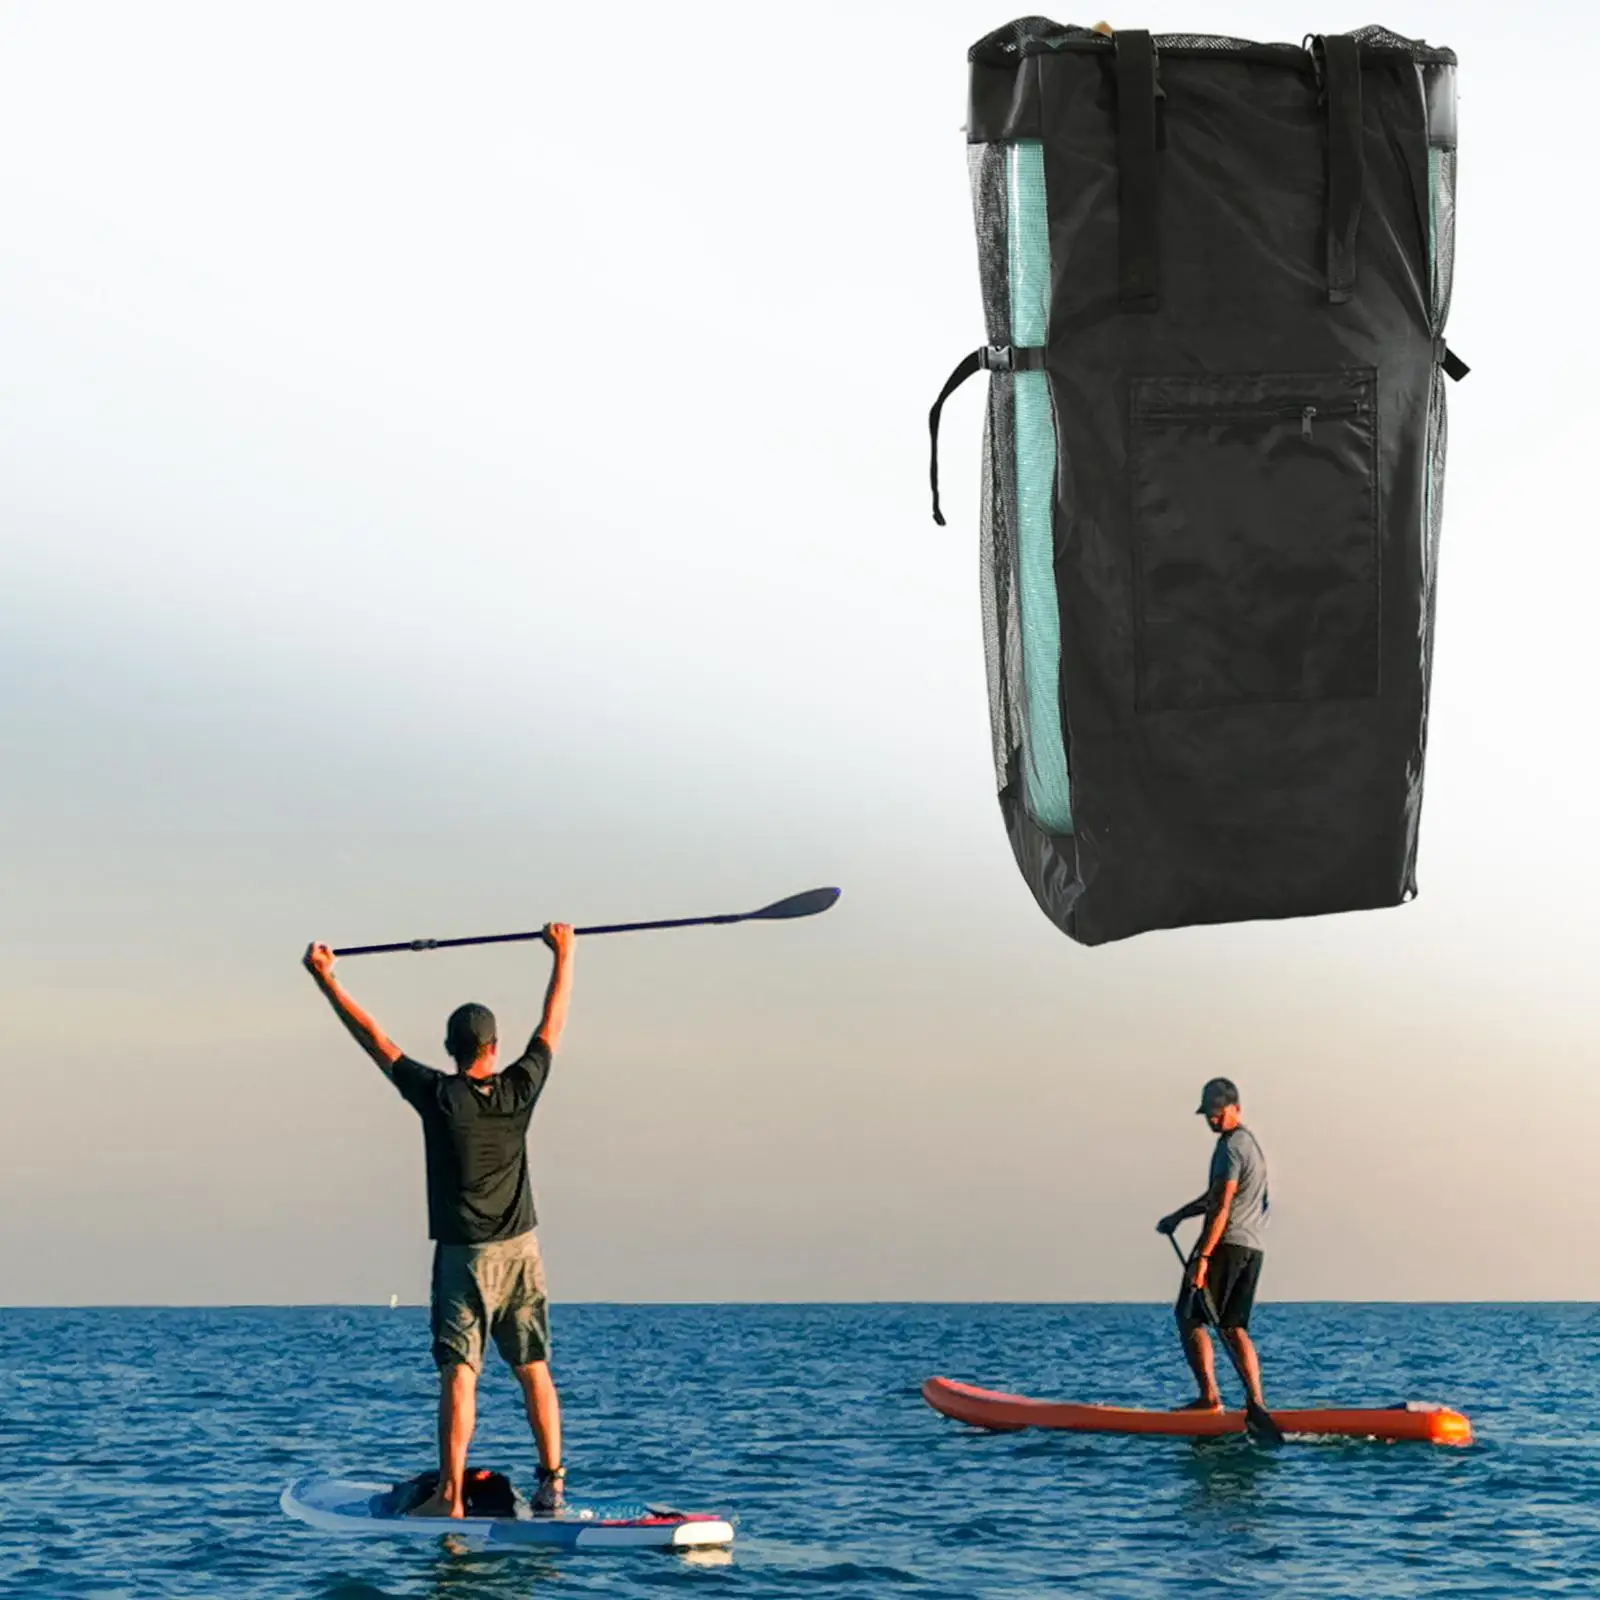 90L Large Capacity Inflatable Paddle Board Storage Holder Carry Mesh Bag & Adjustable Shoulder, Chest Strap